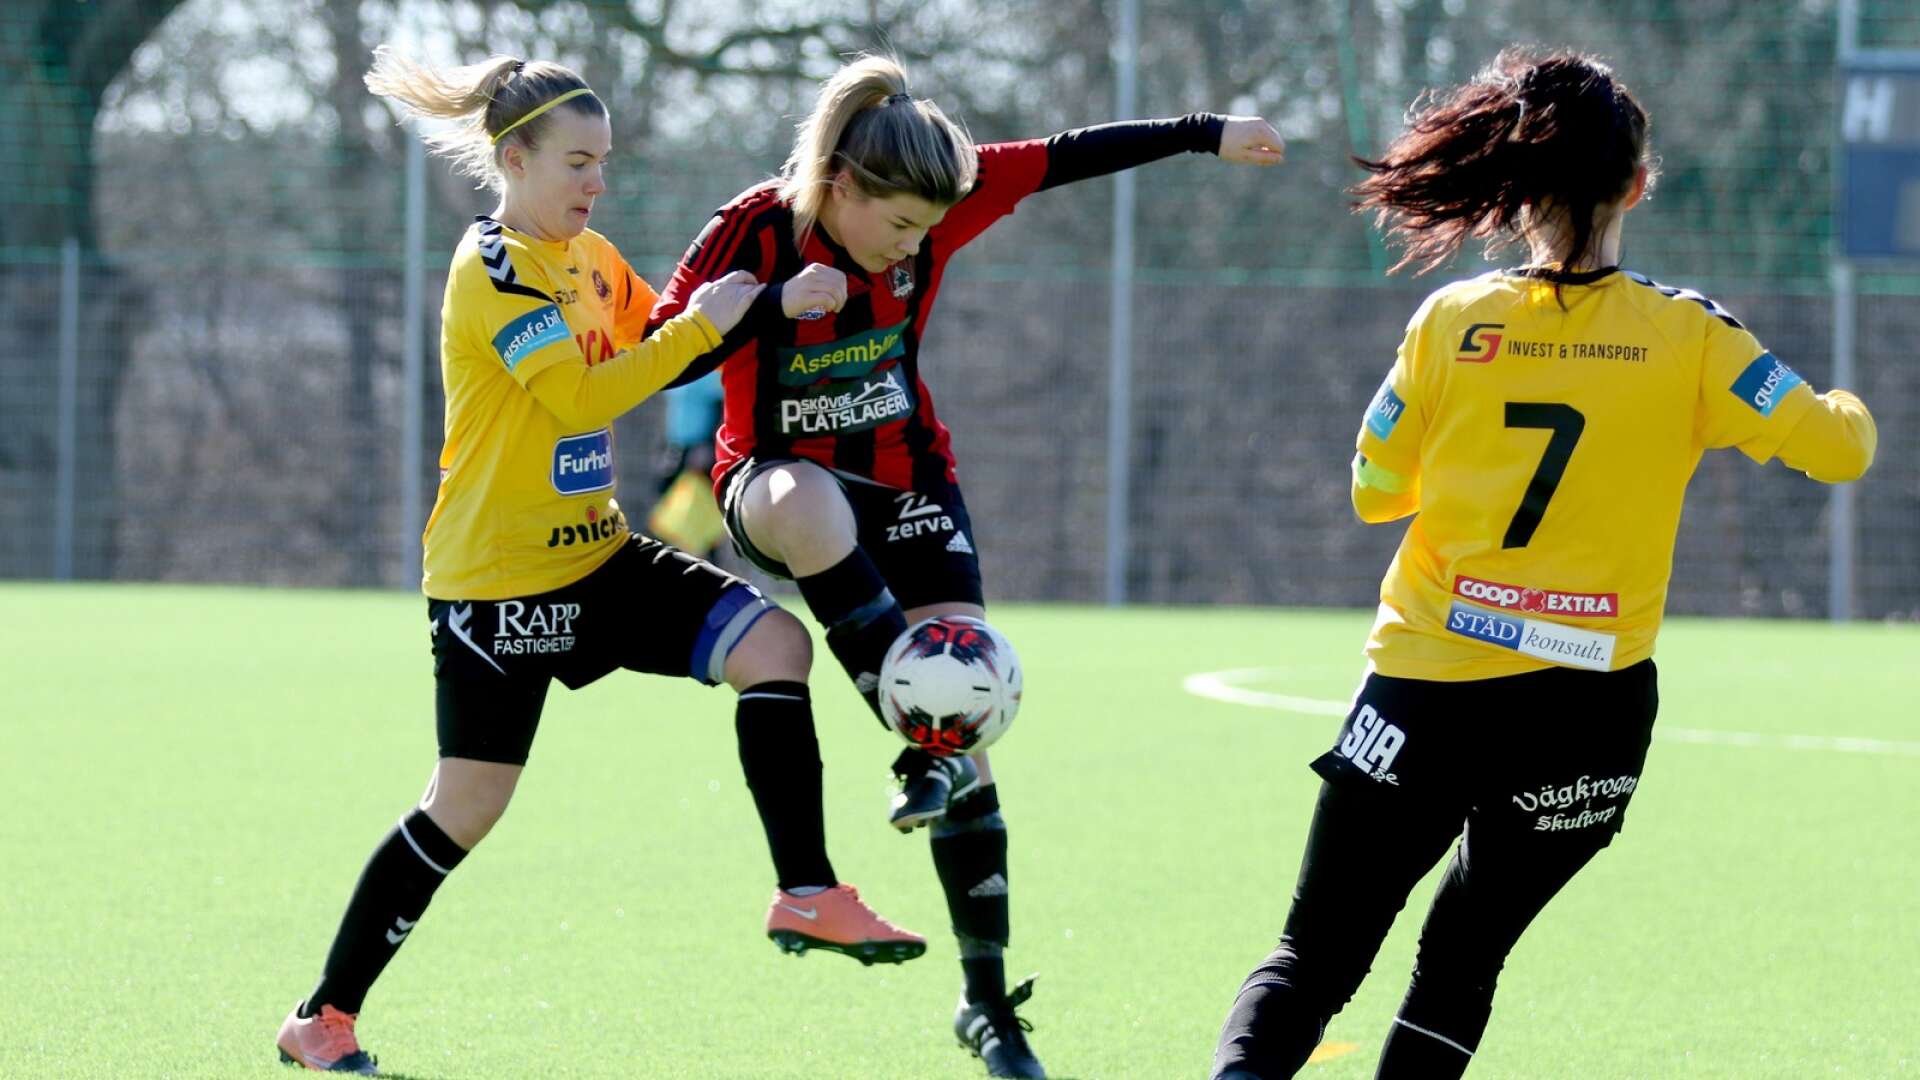 Skultorps IF och Ulvåkers IF möttes i DM på Södermalms IP. Amanda Johansson (Skultorp) och Clara Gustavsson (Ulvåker) i en duell i en tävling som avslutas.